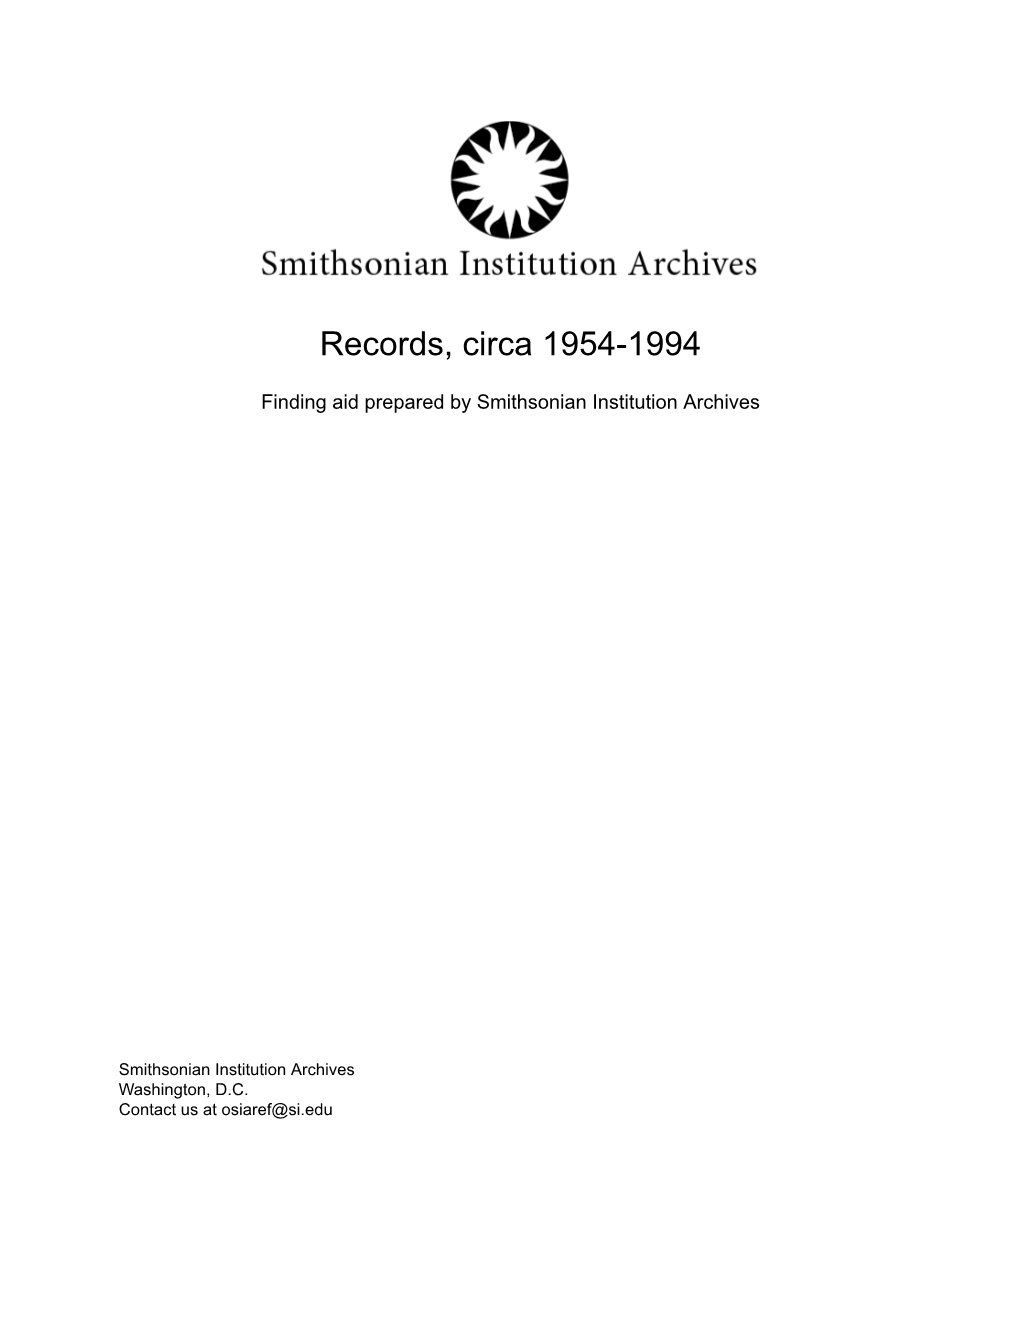 Records, Circa 1954-1994